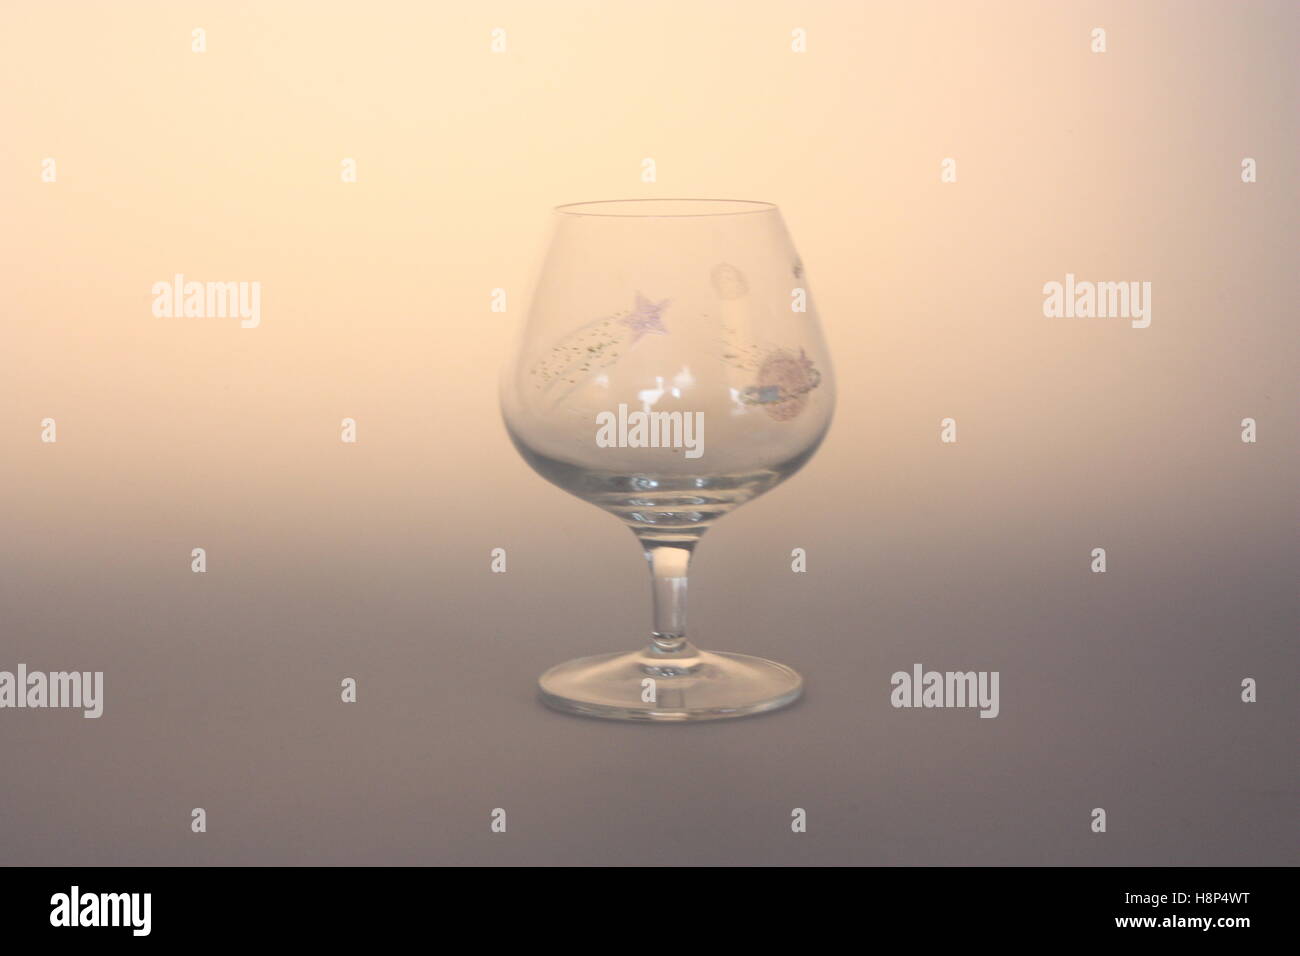 Glas mit Mond und Sternen - Stillleben - Leuchtkasten Stockfoto